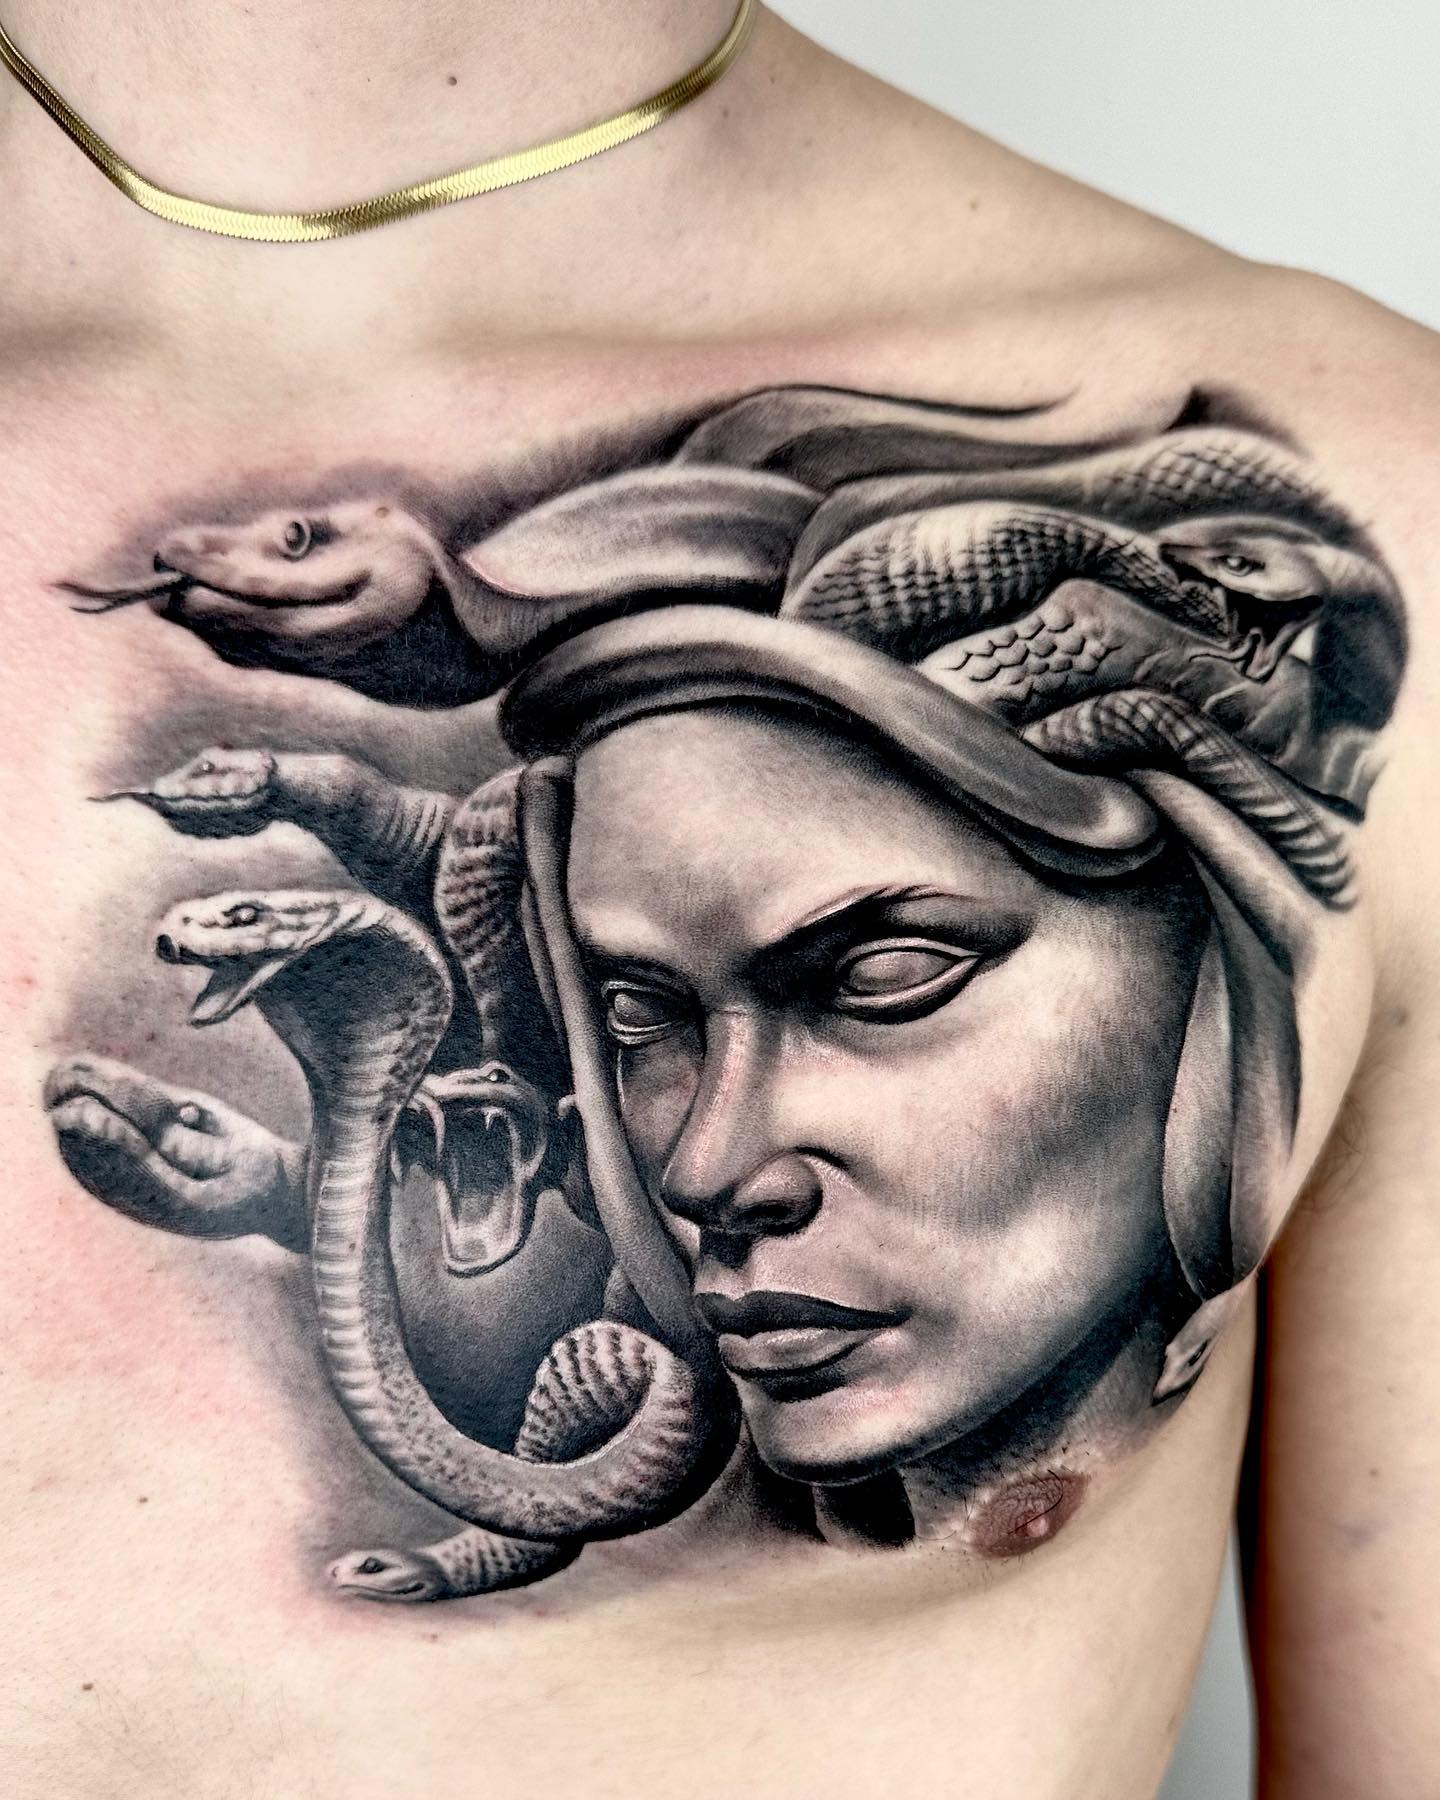 Medusa Statue Tattoo on Chest